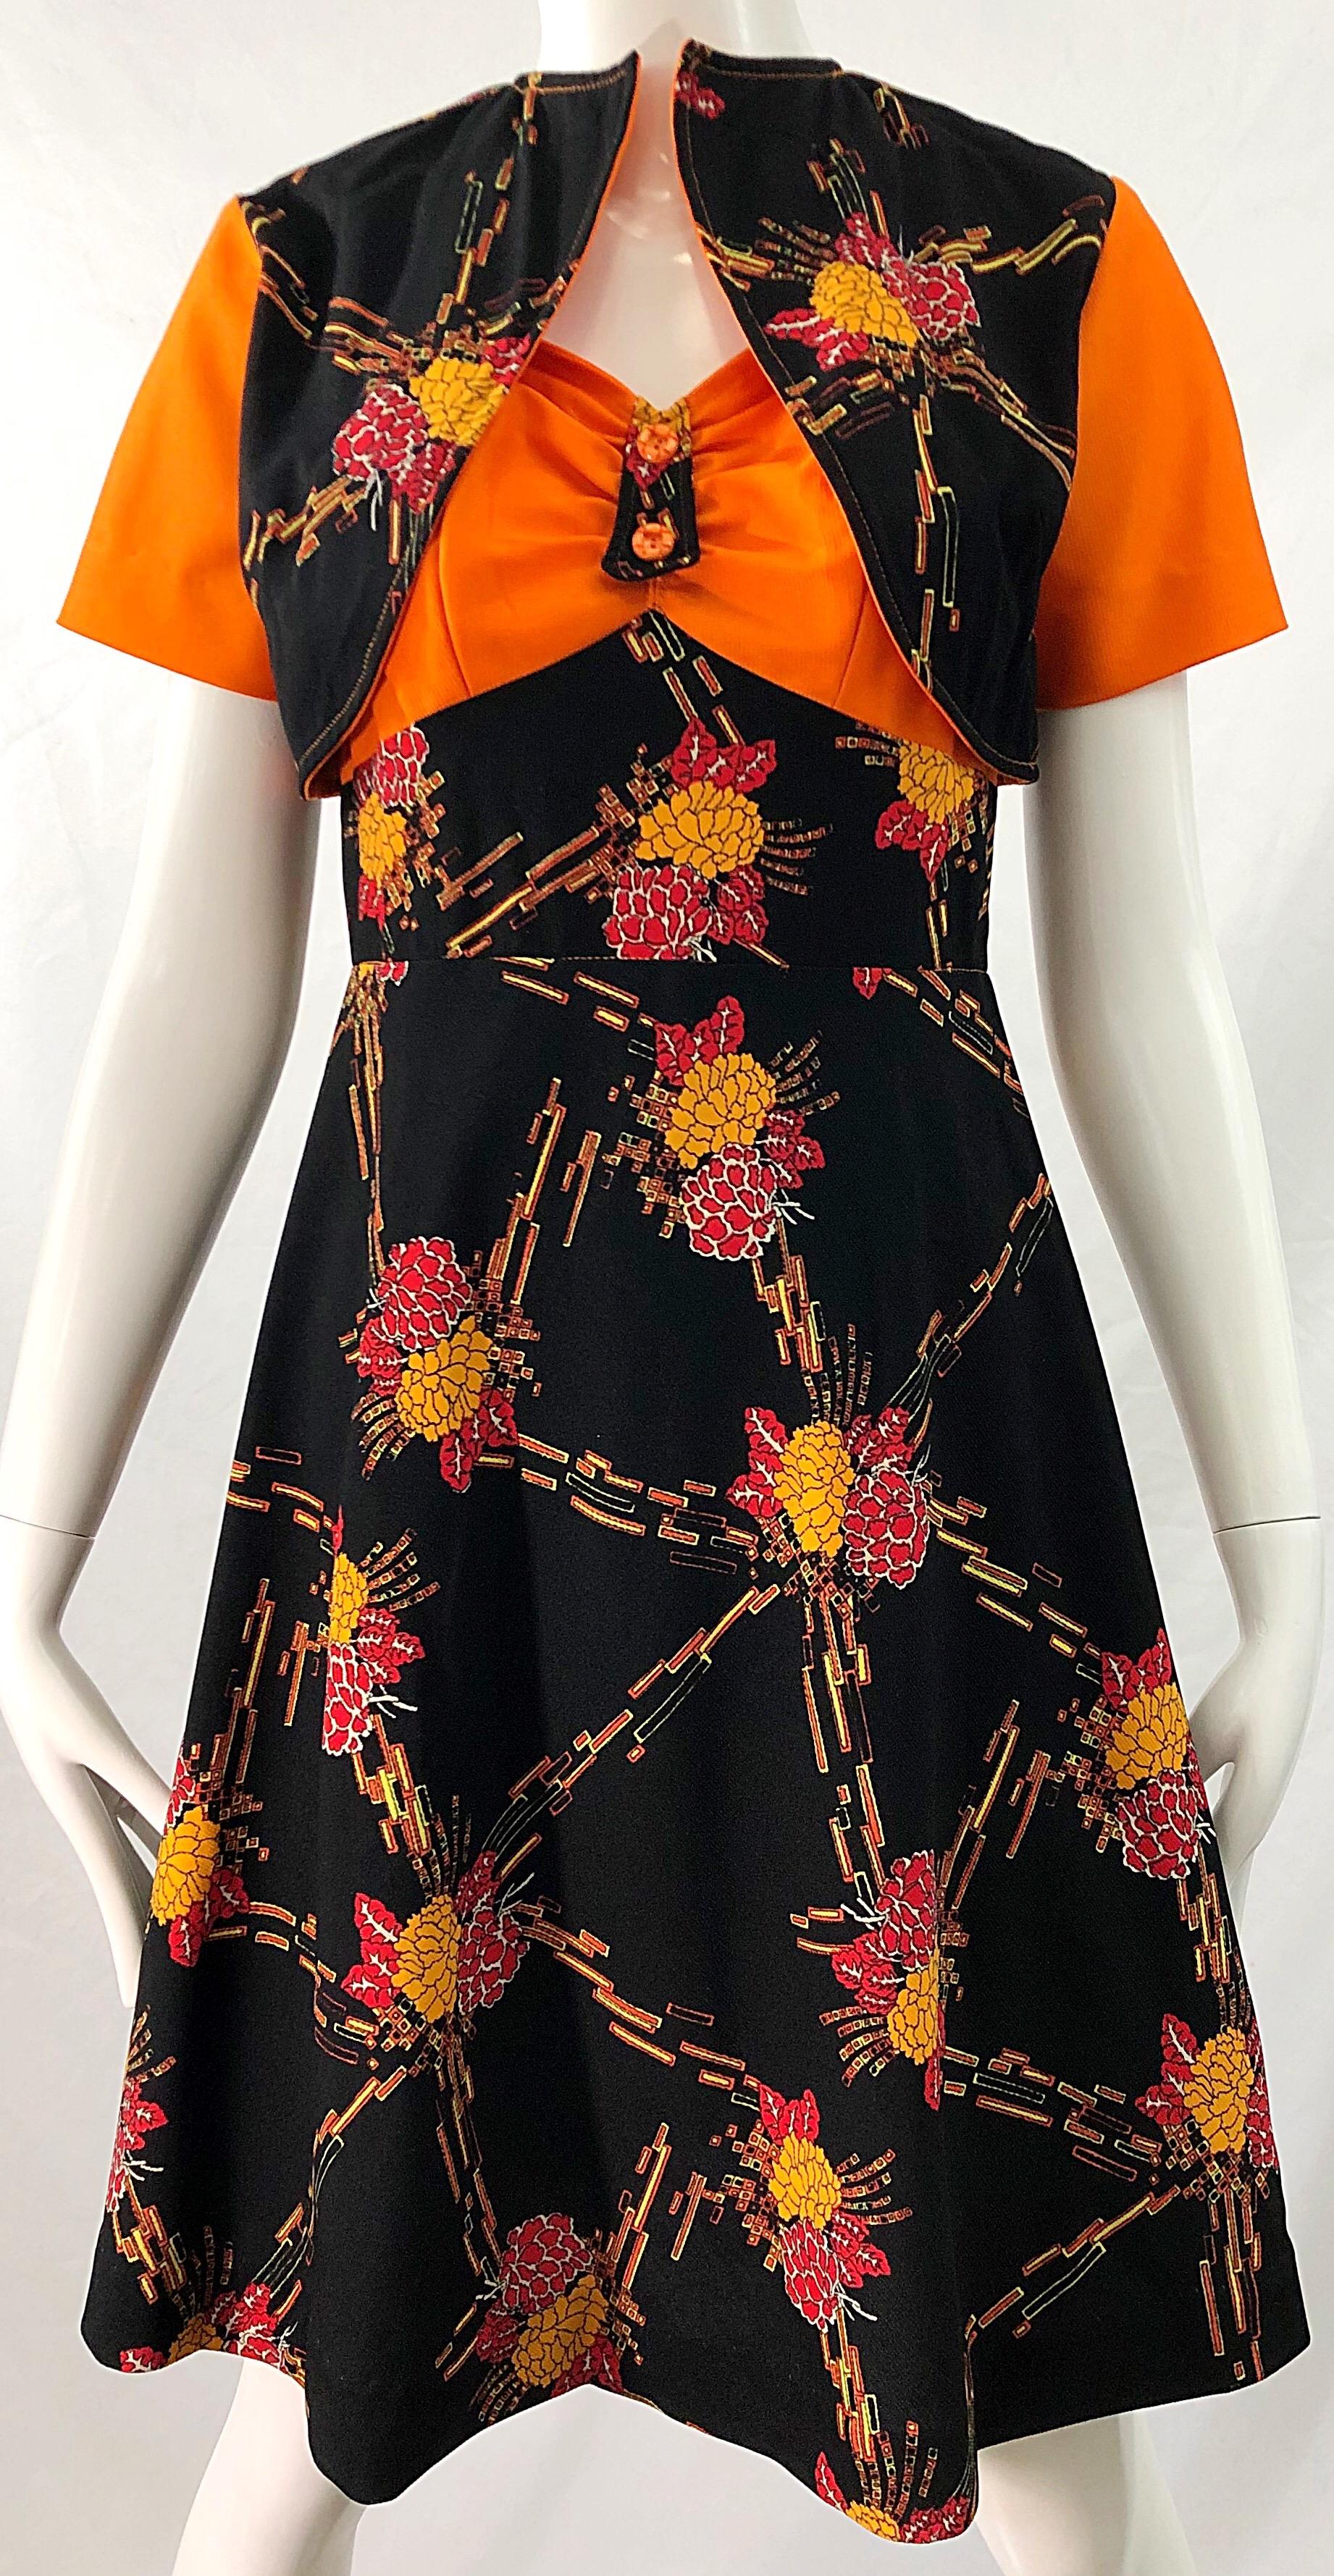 Women's 1970s Autumnal Digital Floral Print Knit Vintage 70s A Line Dress + Bolero Top For Sale